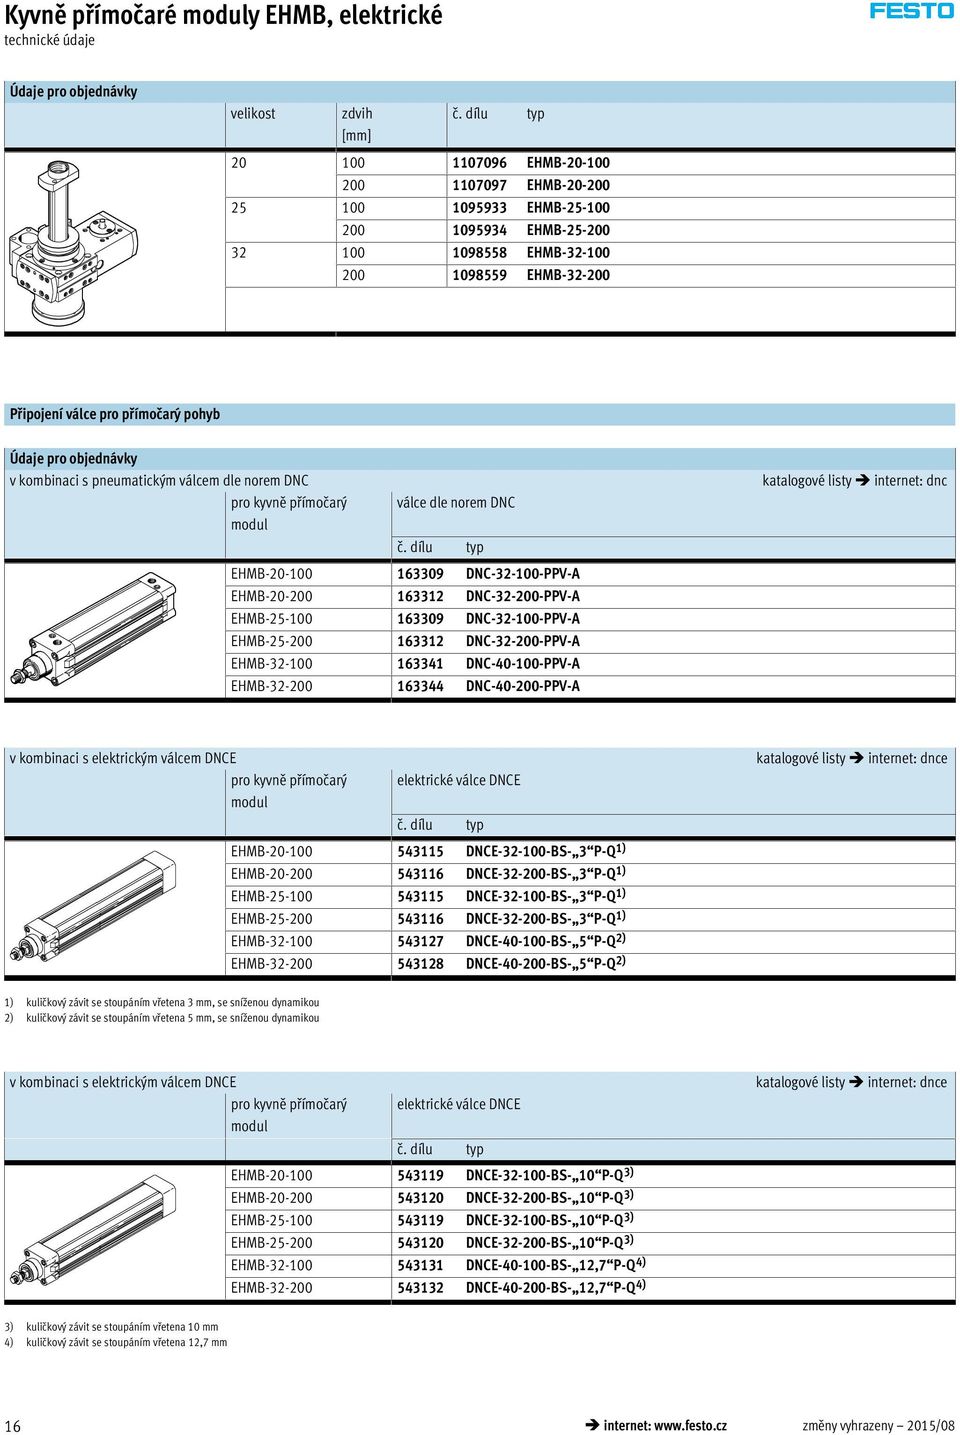 Údaje pro objednávky v kombinaci s pneumatickým válcem dle norem DNC pro kyvně přímočarý modul válce dle norem DNC č.